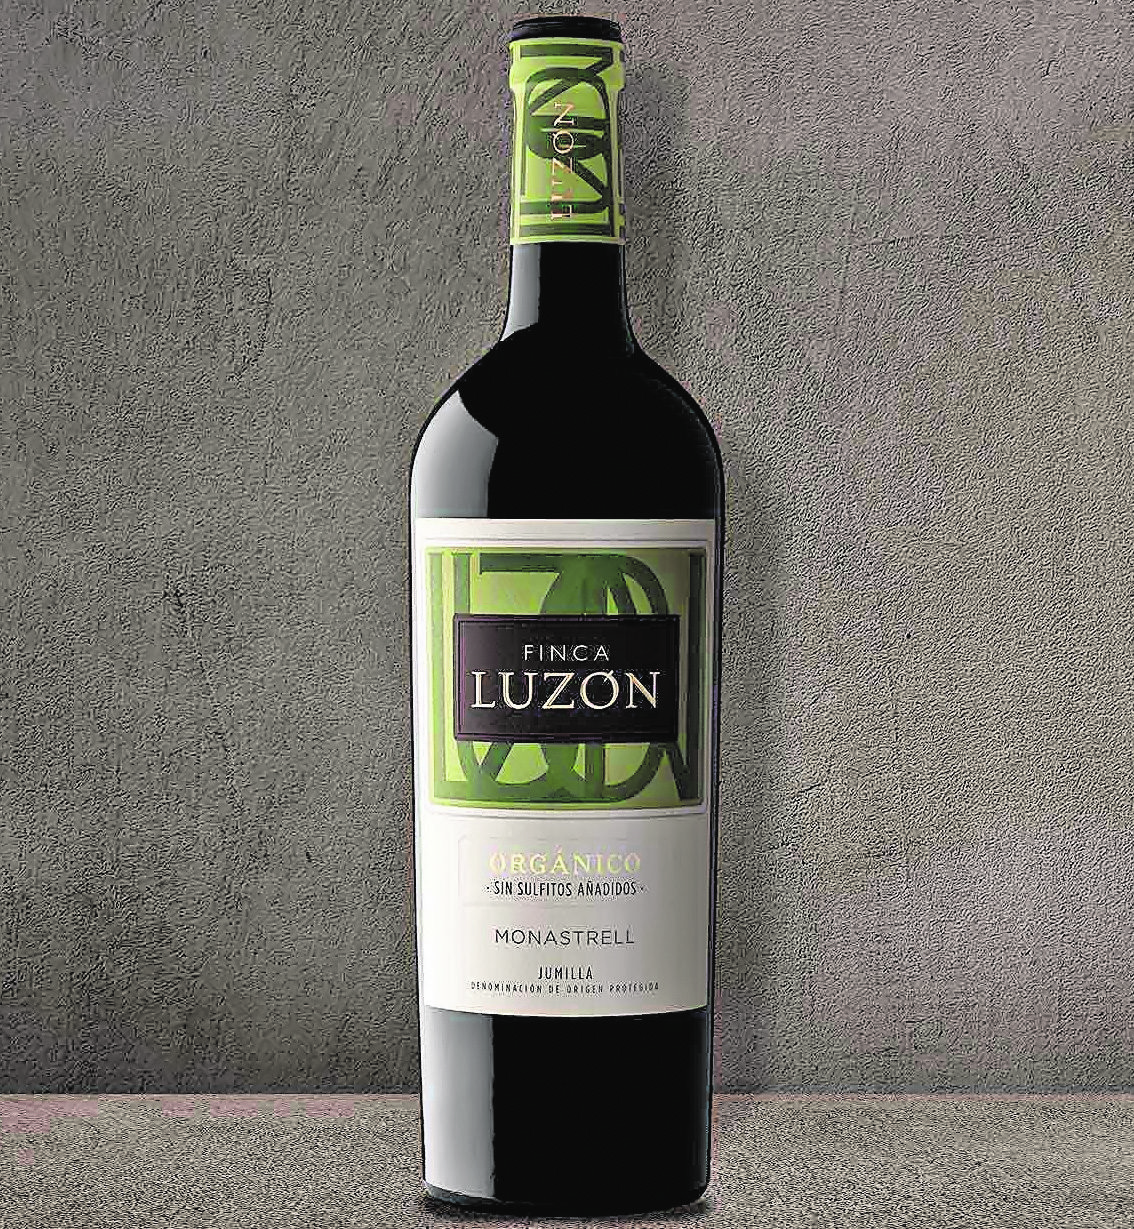 La nueva apuesta de Bodegas Luzón es Finca Luzón, un vino sin sulfitos